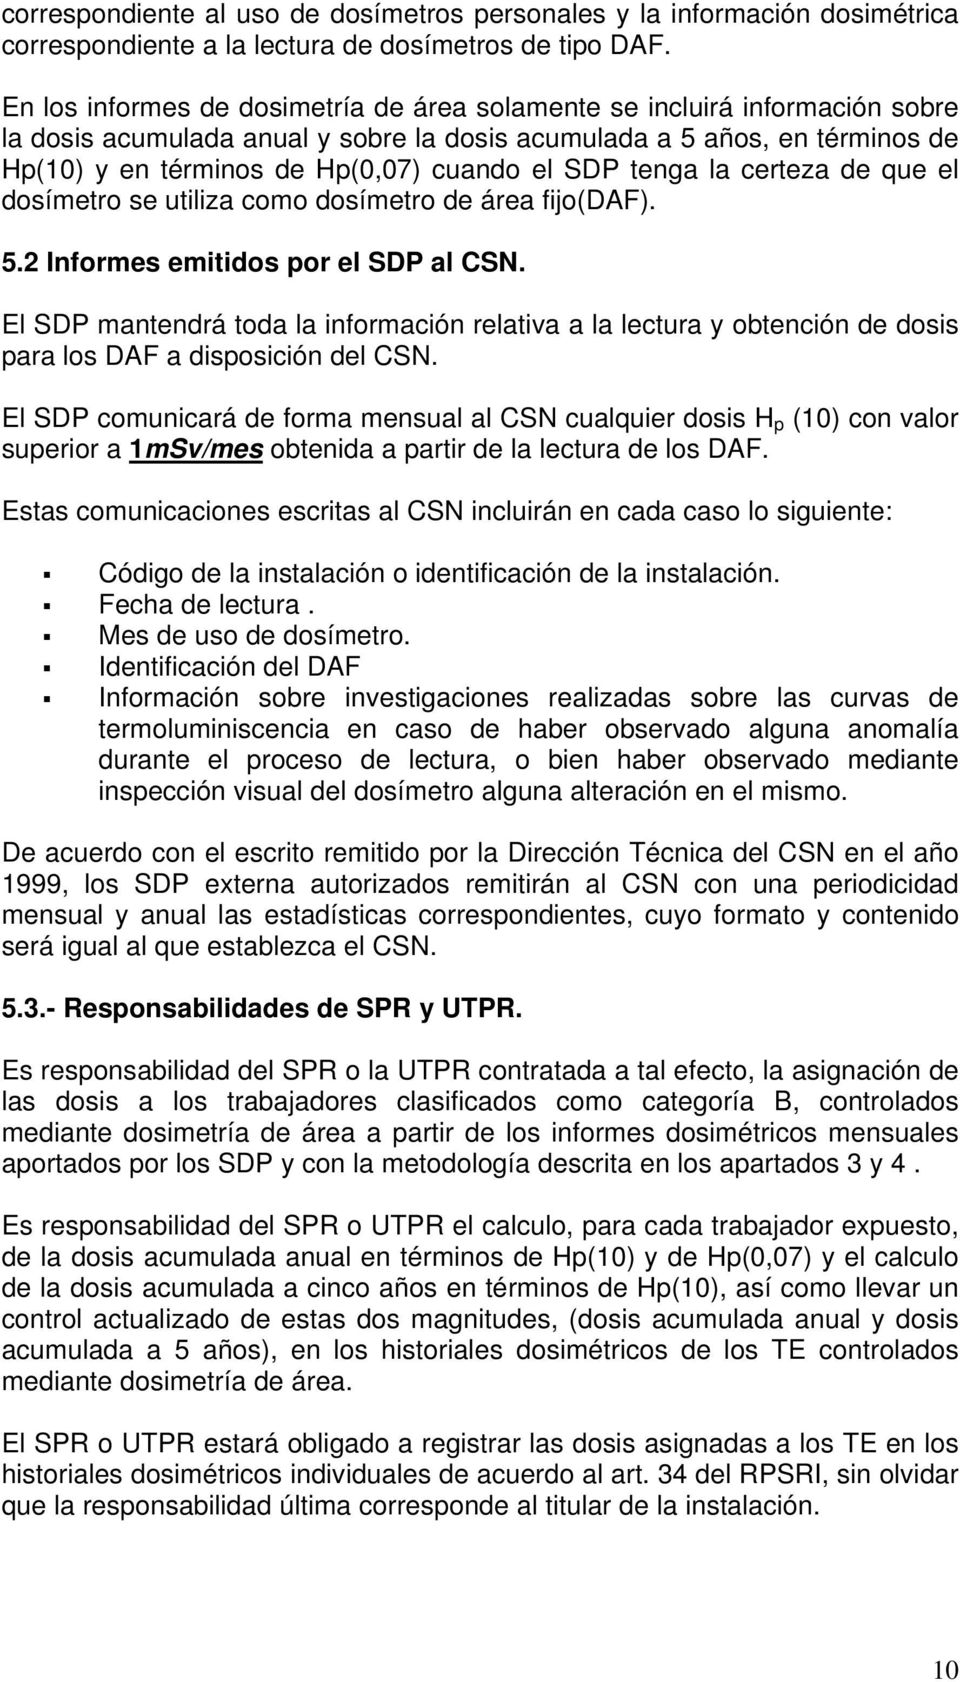 SDP tenga la certeza de que el dosímetro se utiliza como dosímetro de área fijo(daf). 5.2 Informes emitidos por el SDP al CSN.